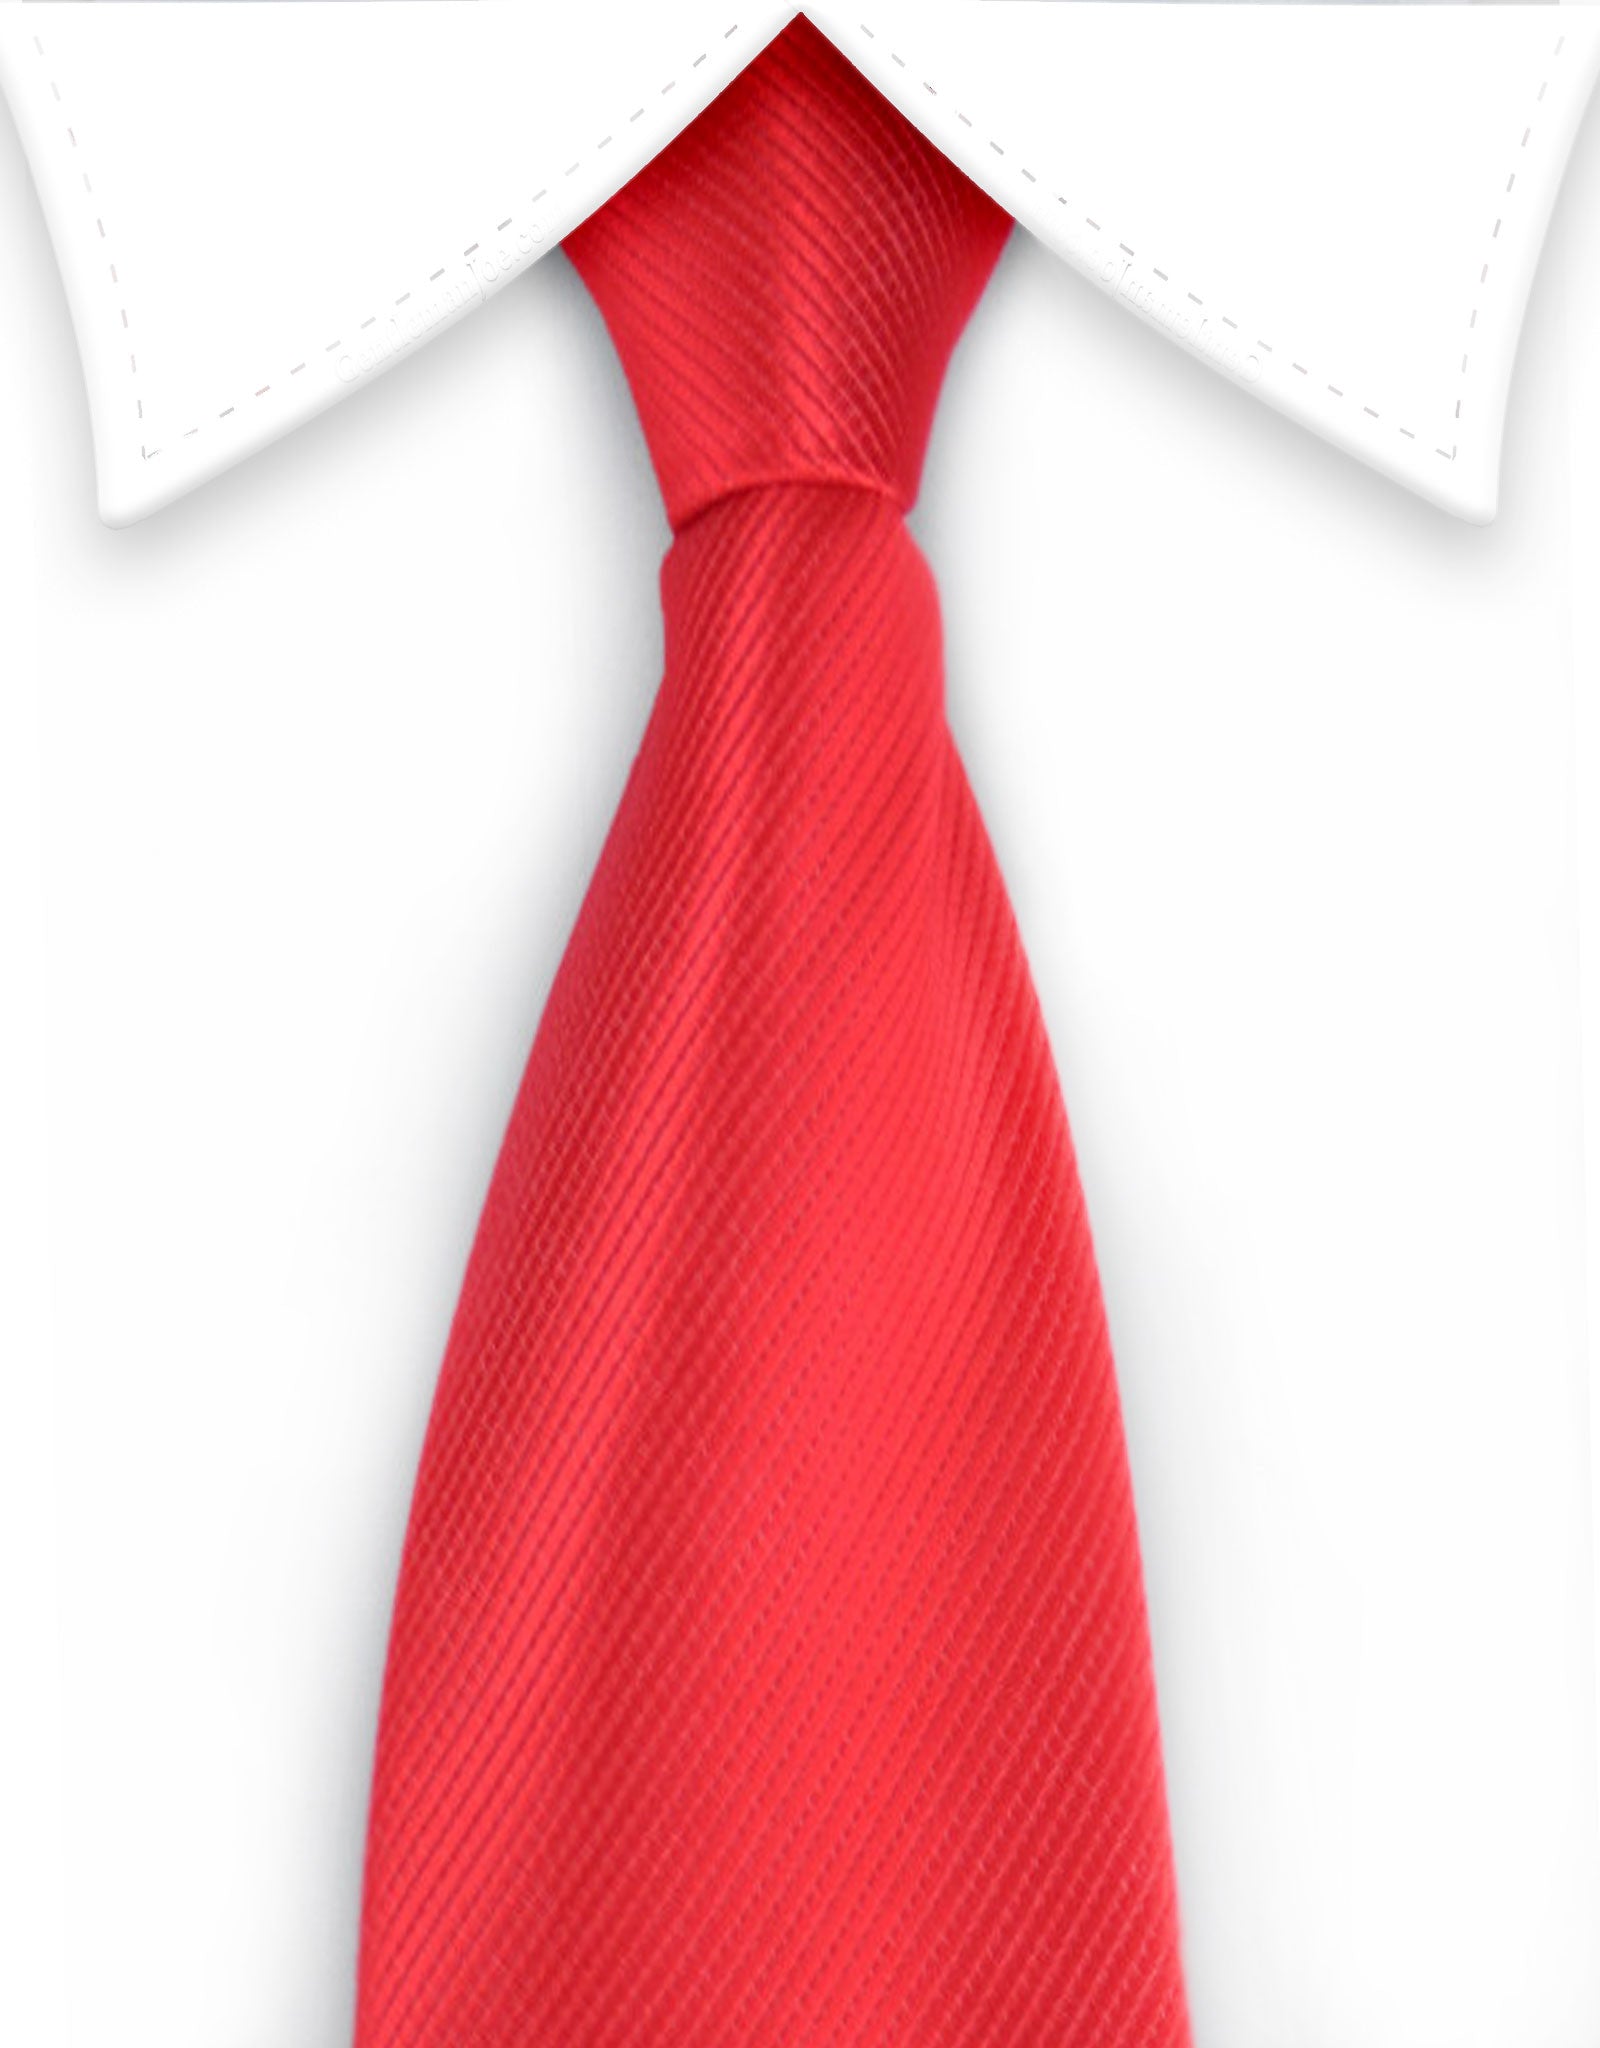 Red Men's Zipper Tie